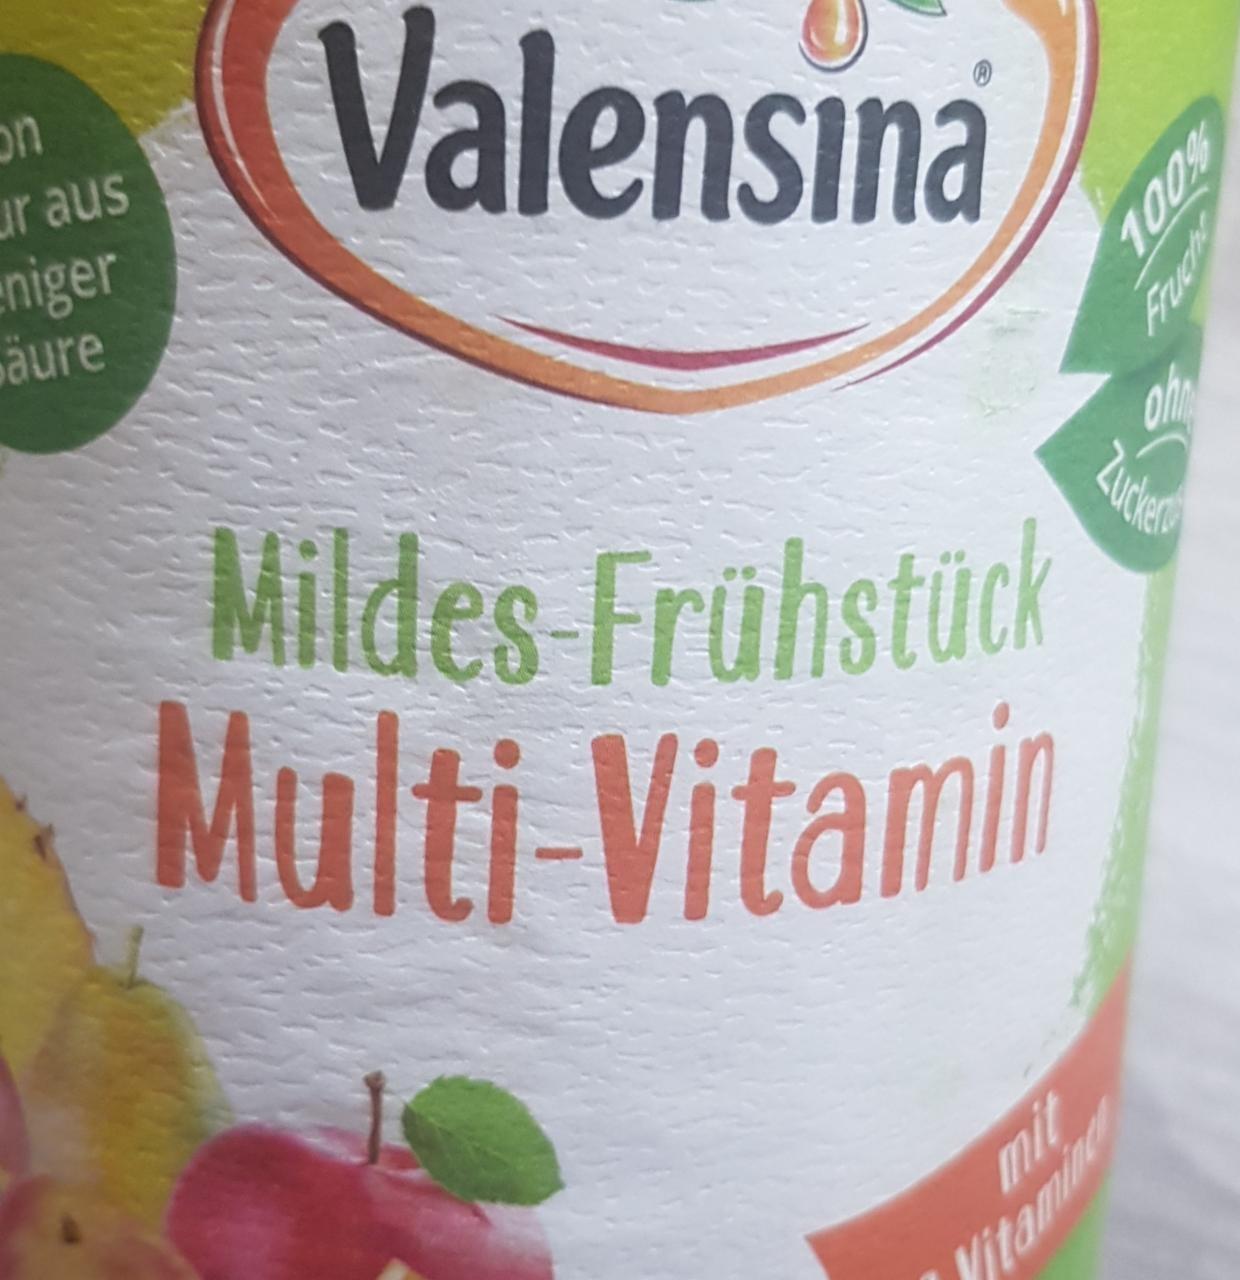 Képek - Multi-vitamin Valensina